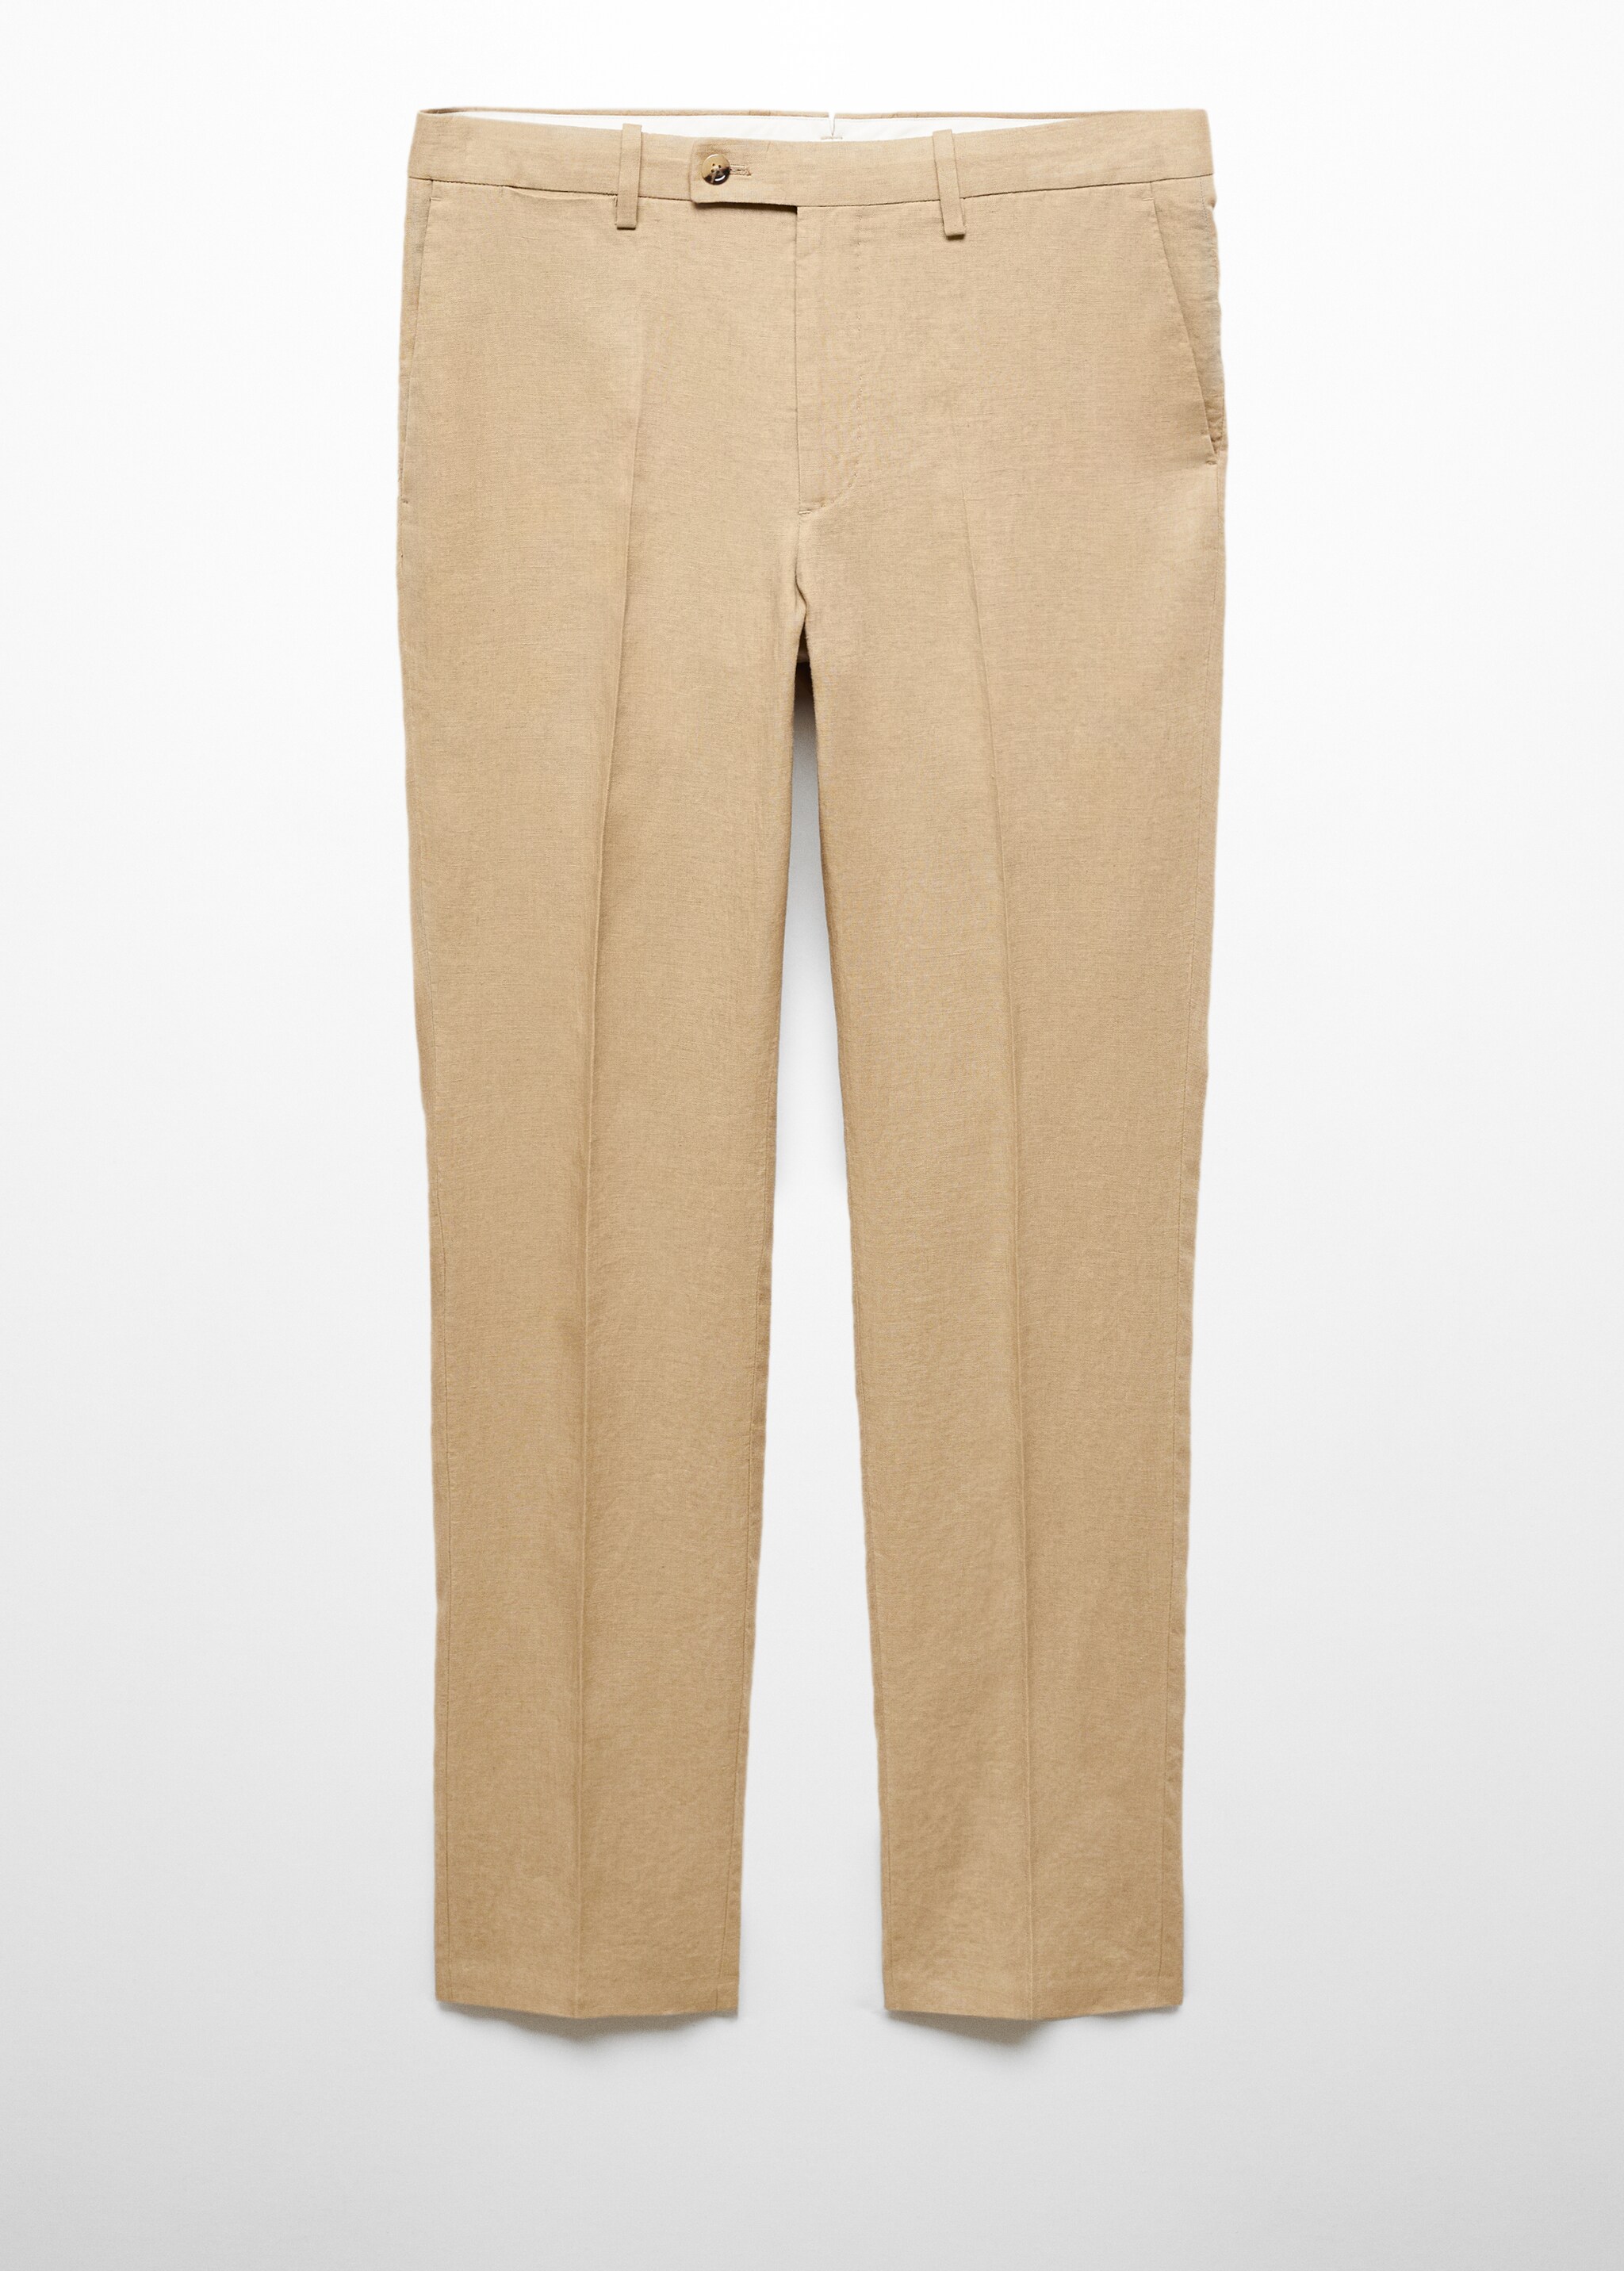 Slim fit suit pants 100% linen - Article without model